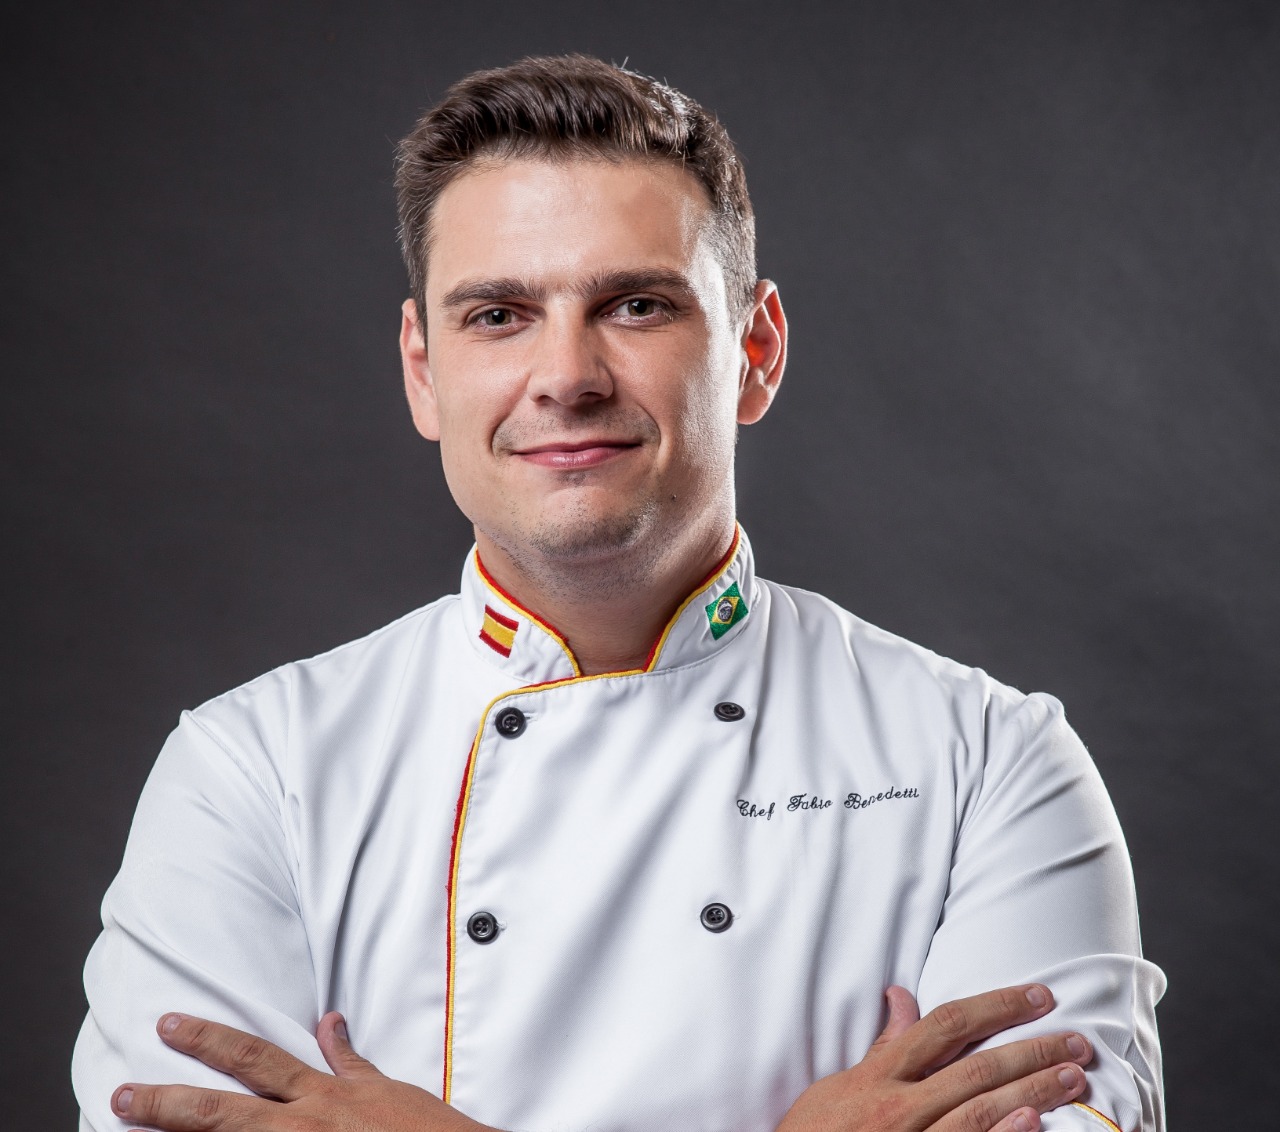 Chef Fábio Benedetti paella pepe